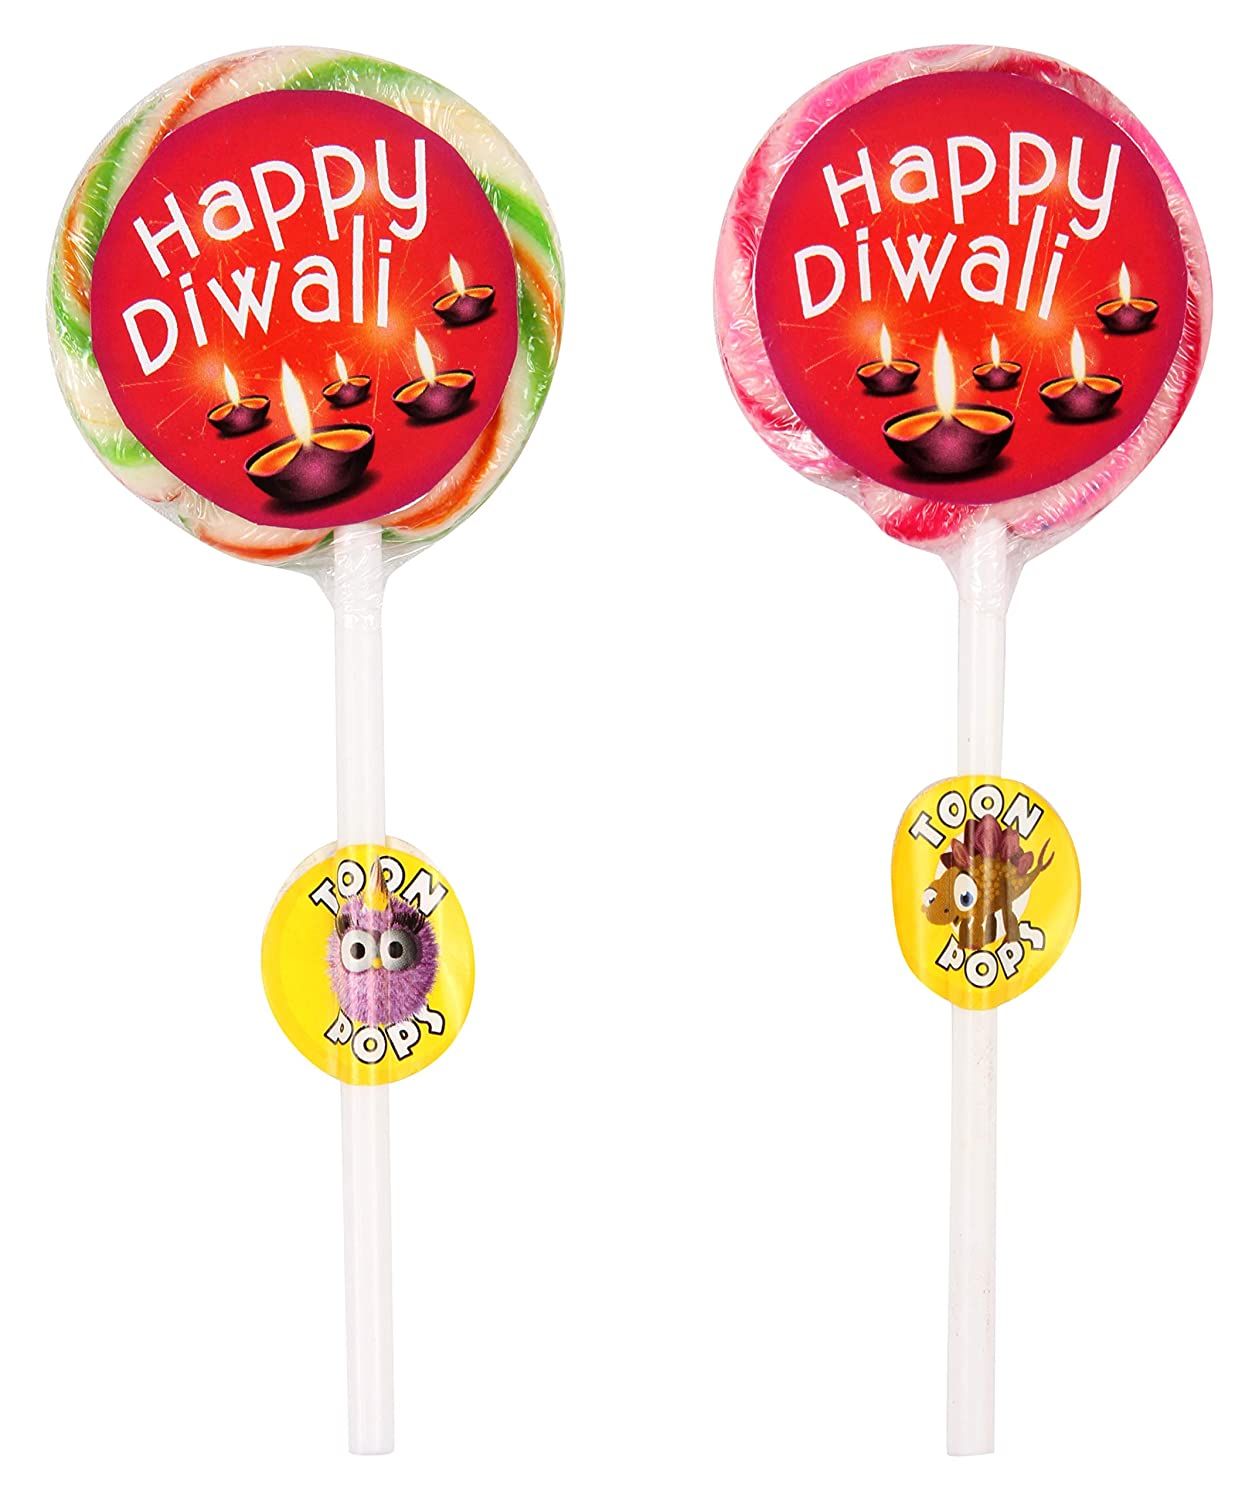 TOONPOPS Happy Diwali Lollipops Image